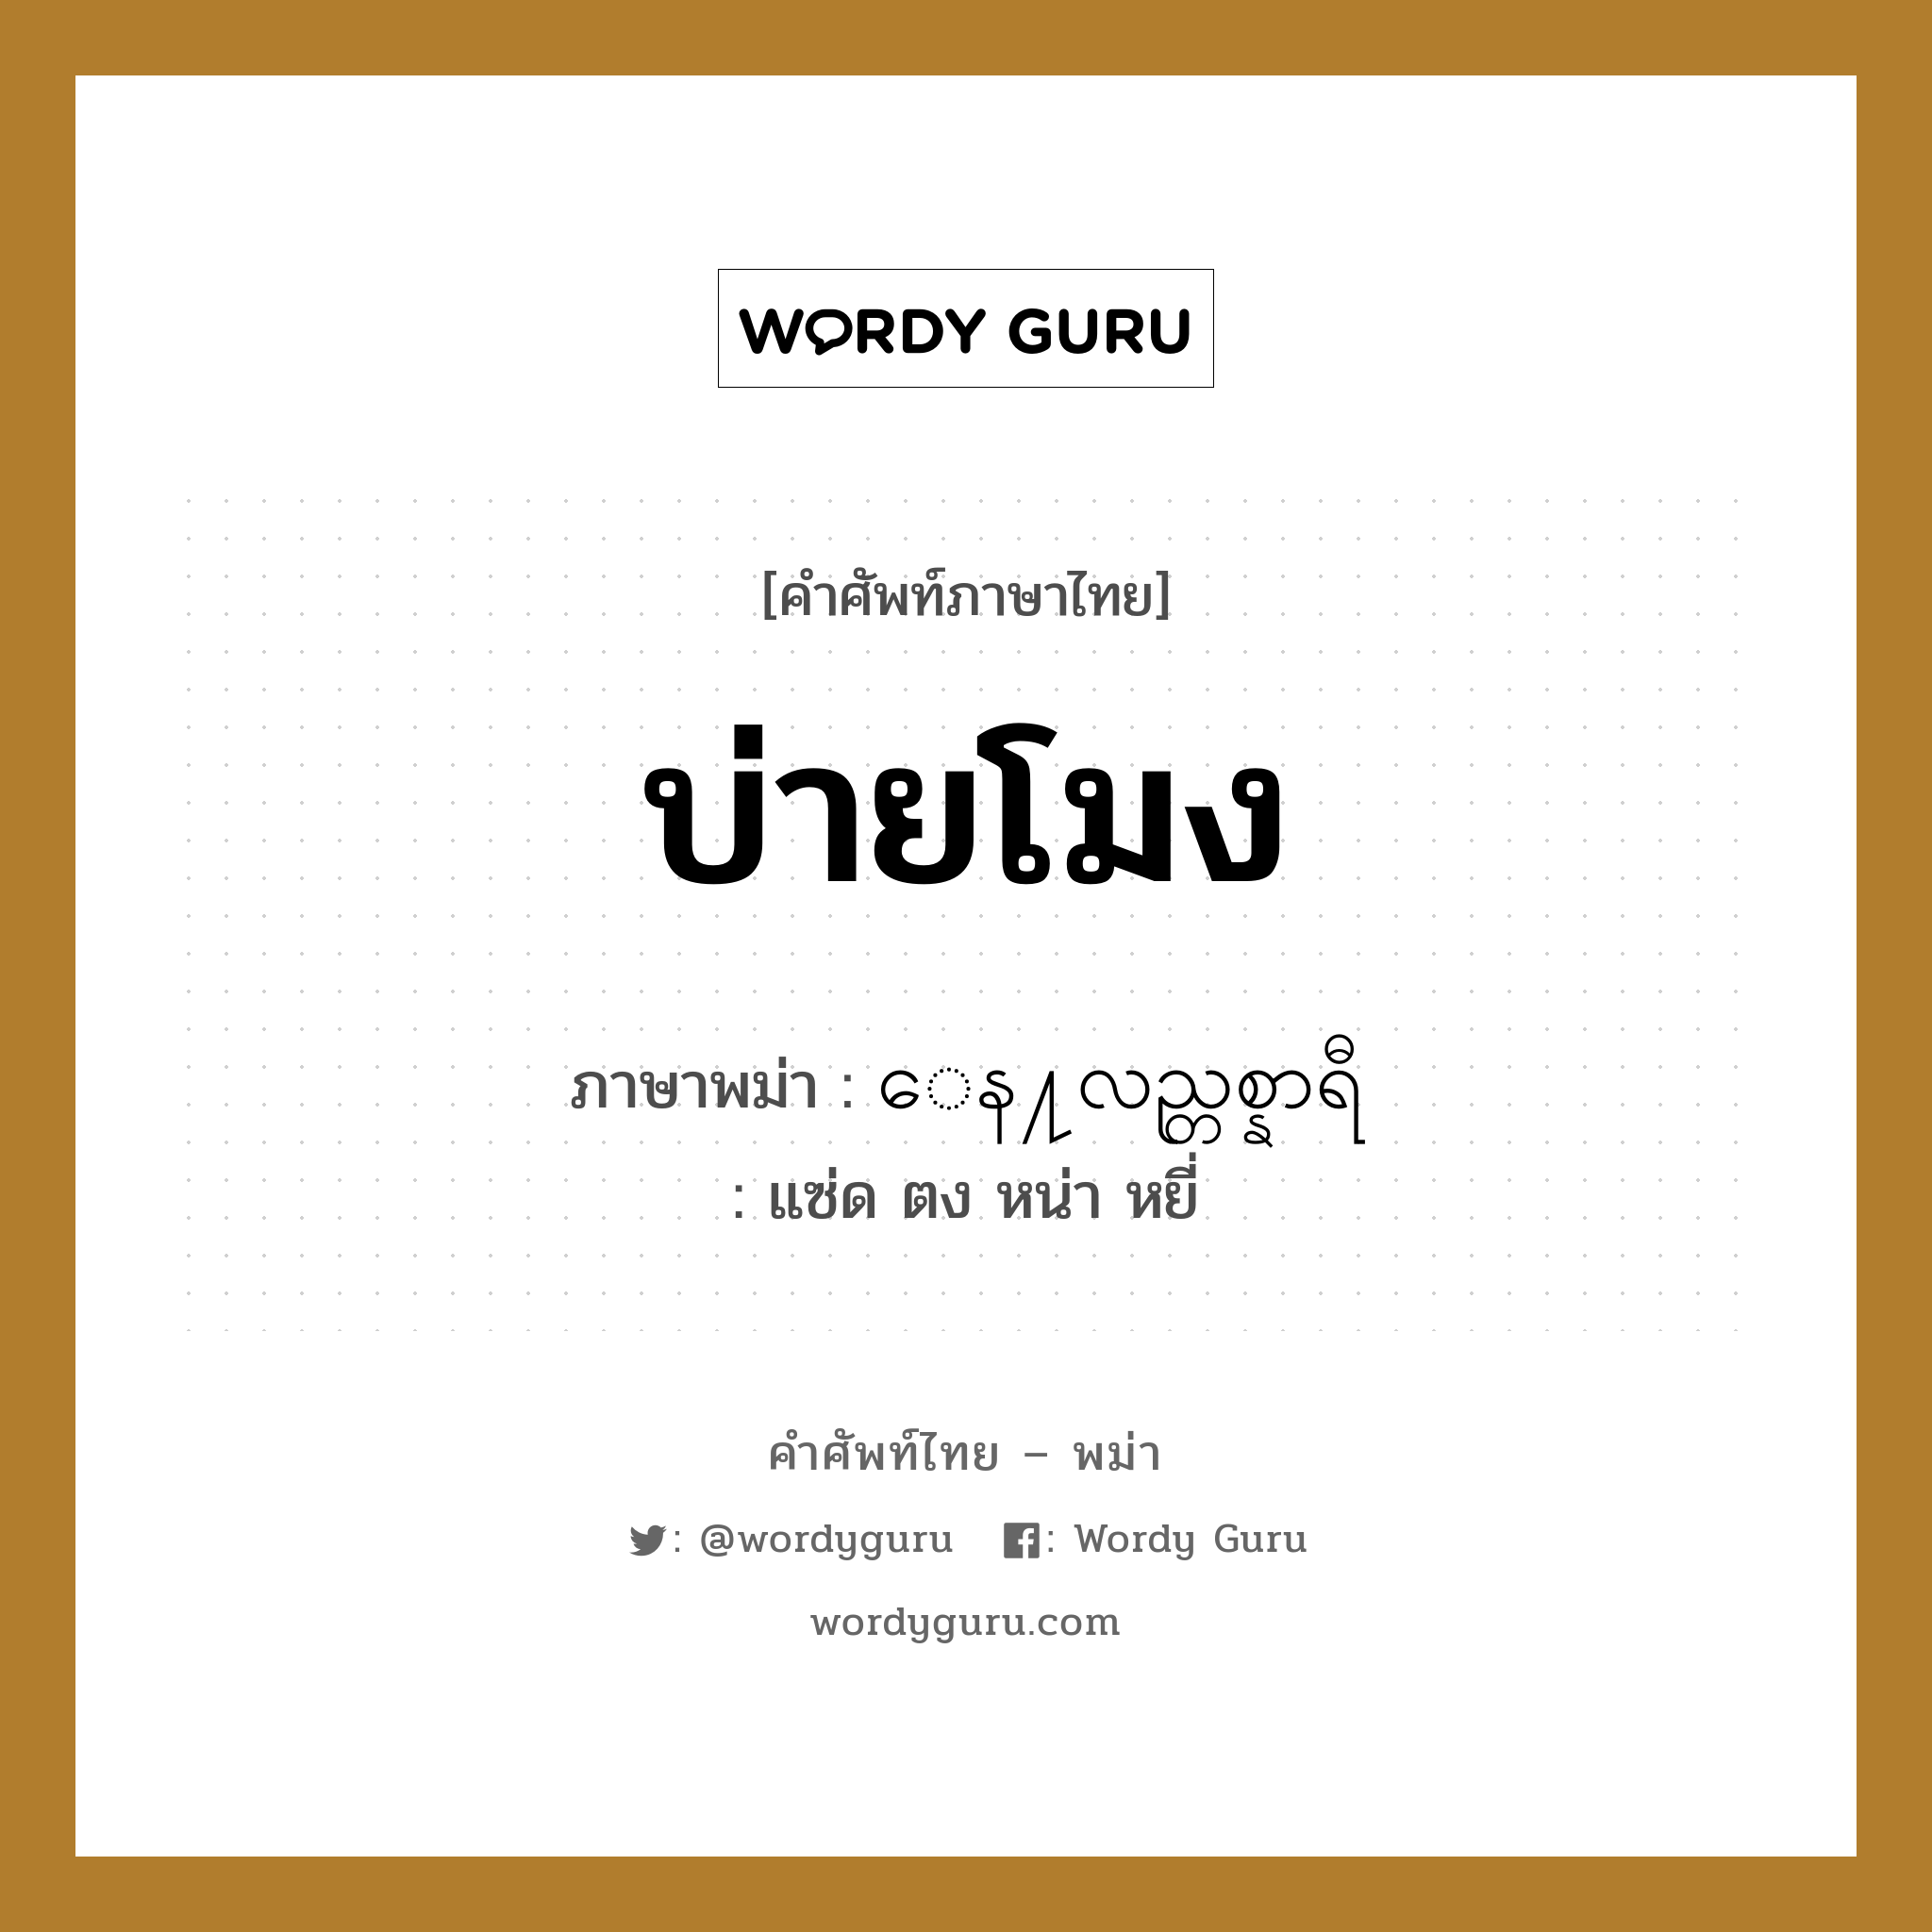 บ่ายโมง ภาษาพม่าคืออะไร, คำศัพท์ภาษาไทย - พม่า บ่ายโมง ภาษาพม่า ေန႔လည္တစ္နာရီ หมวด หมวดวัน เวลา แซ่ด ตง หน่า หยี่ หมวด หมวดวัน เวลา